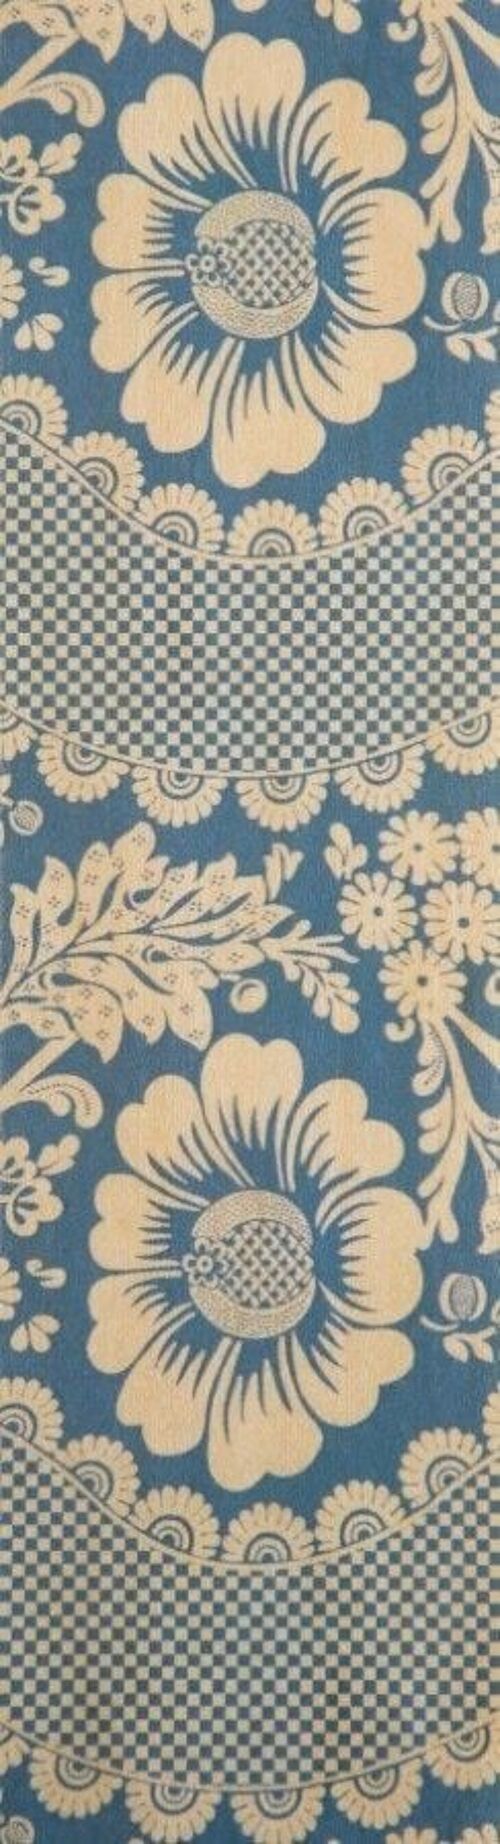 Marque-pages en bois - toile de jouy fleurs bleu